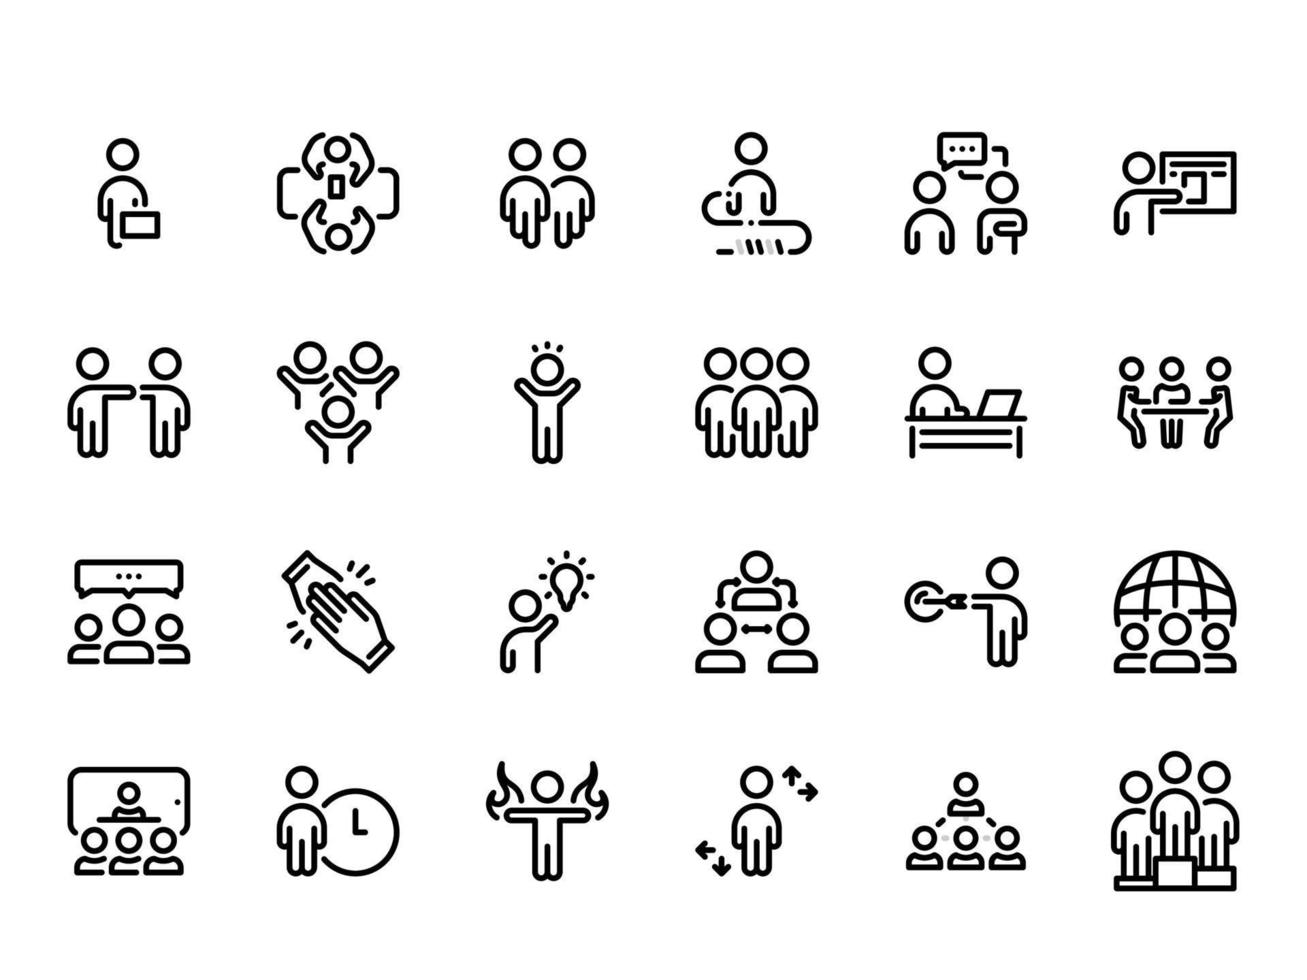 conjunto de ícones do vetor preto, isolados contra um fundo branco. ilustração plana em um tema de comunicação e trabalho em equipe